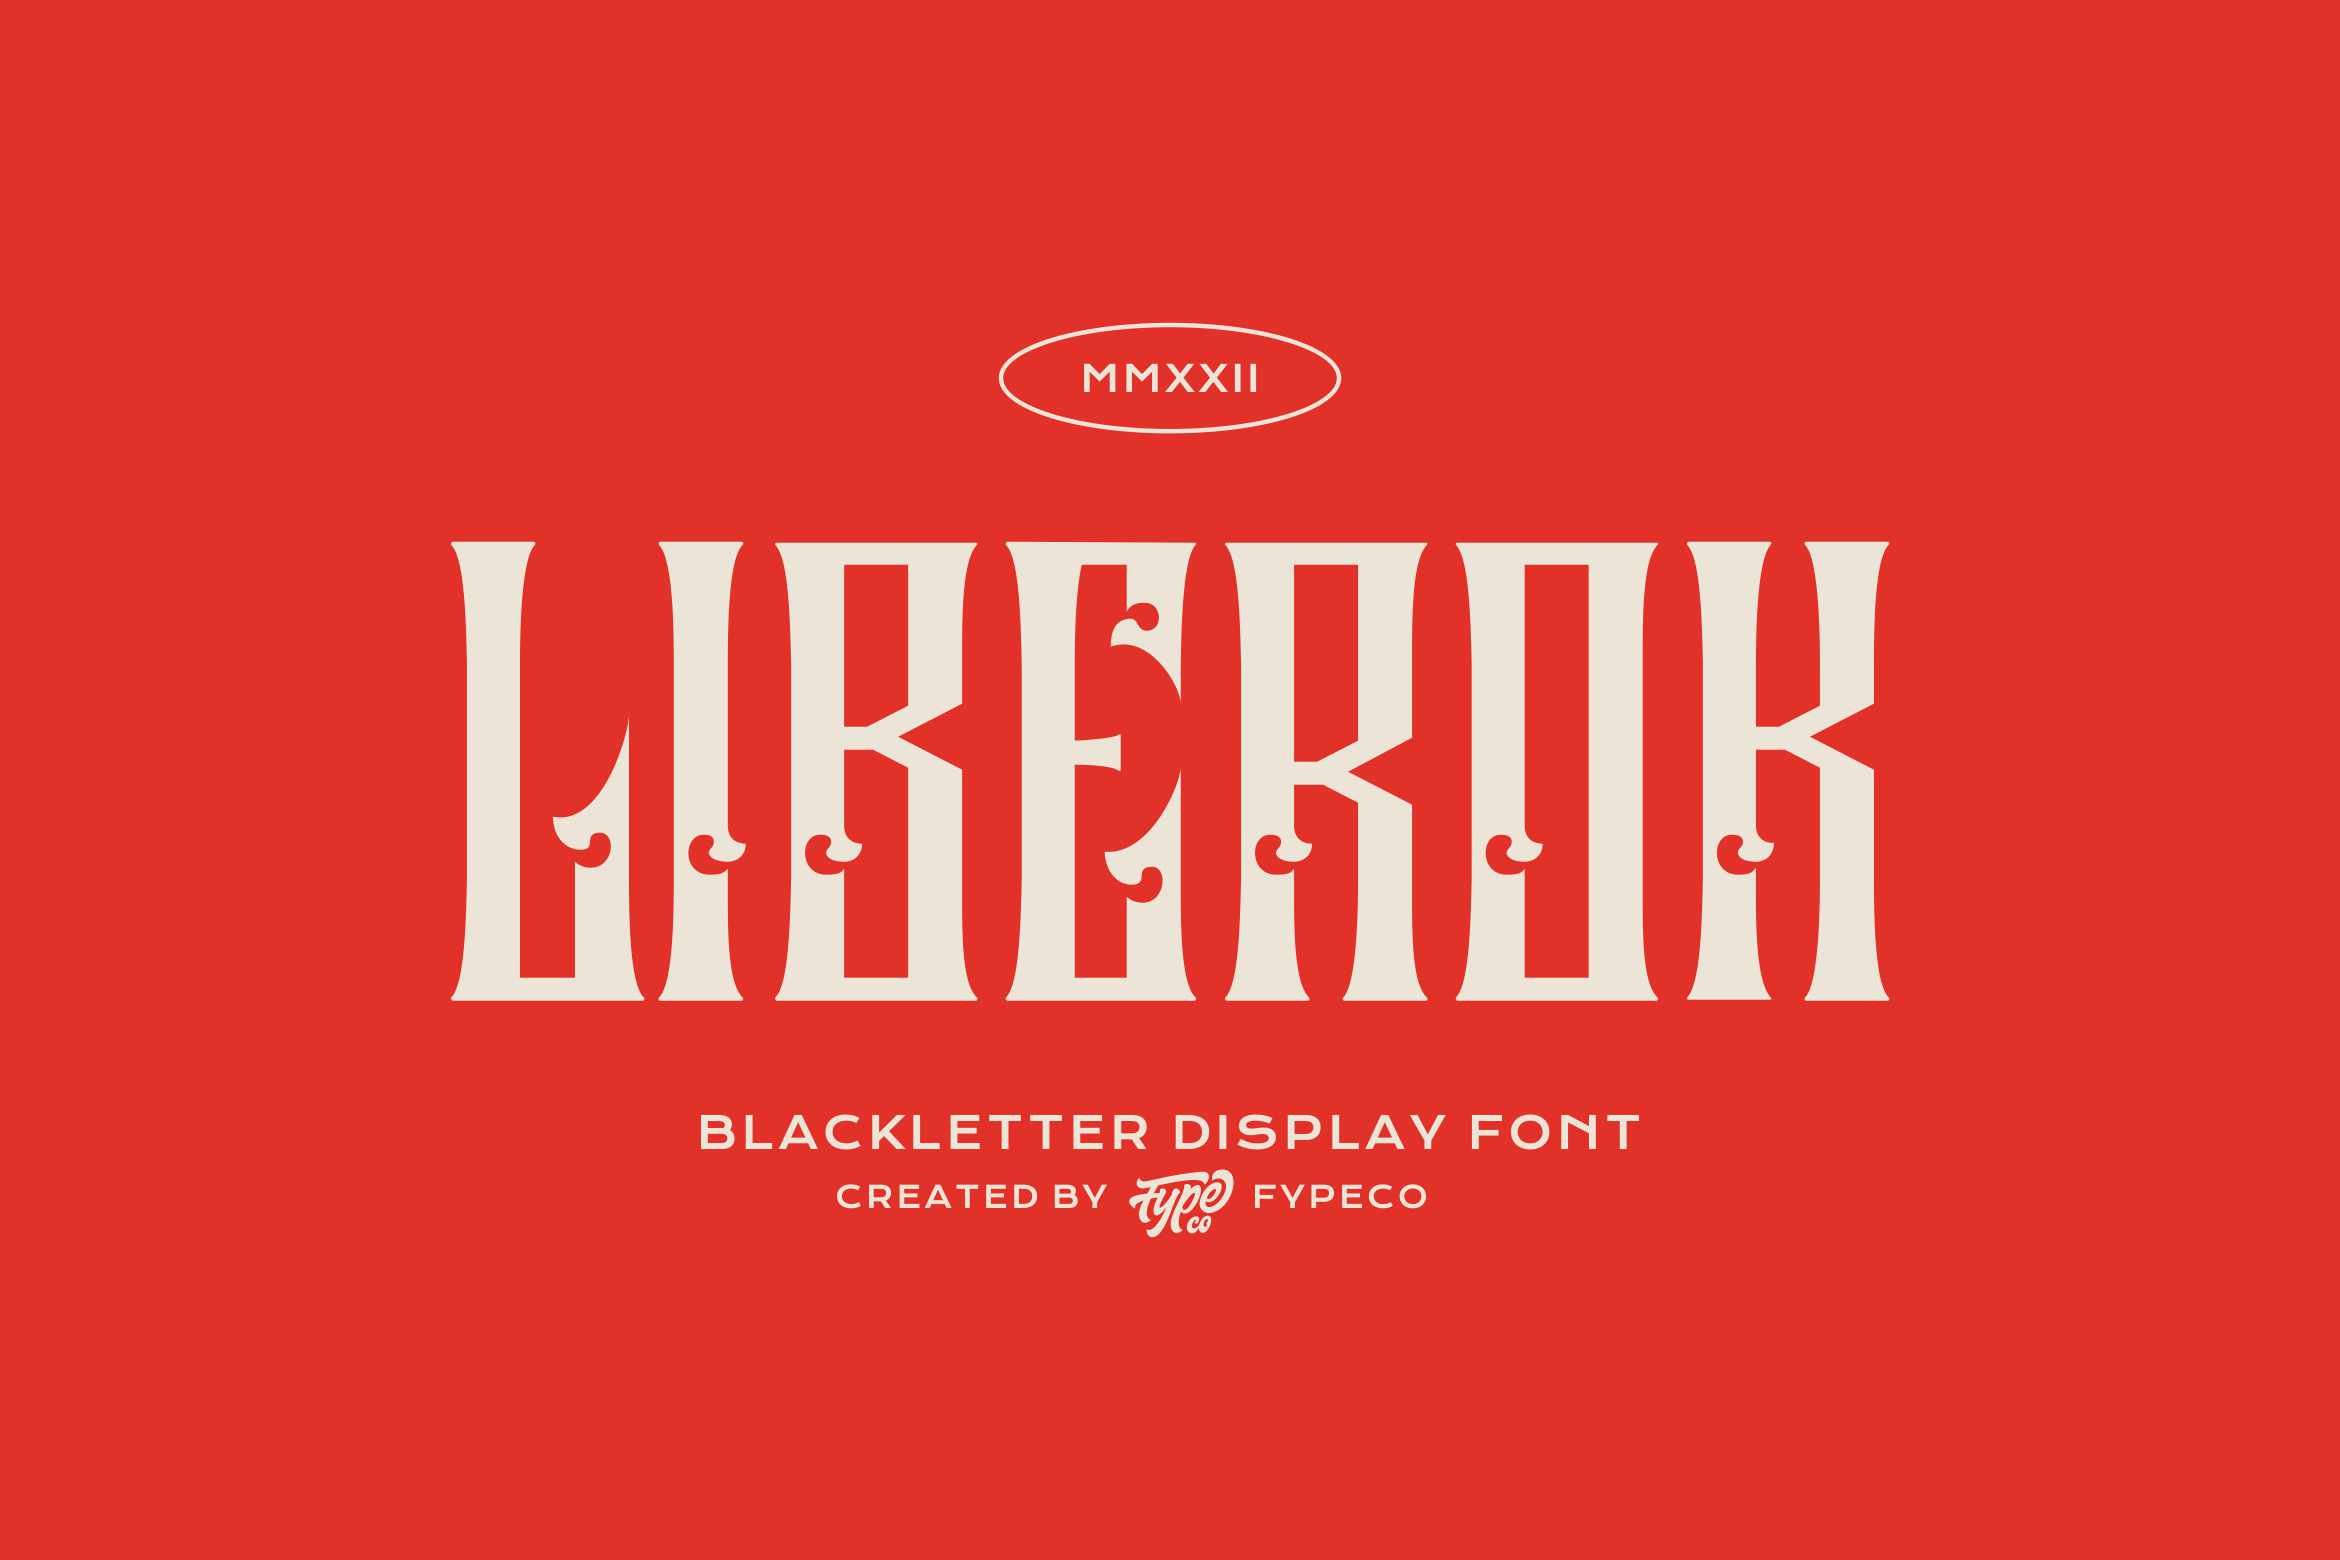 Liberok-Blackletter Display Font cover image.